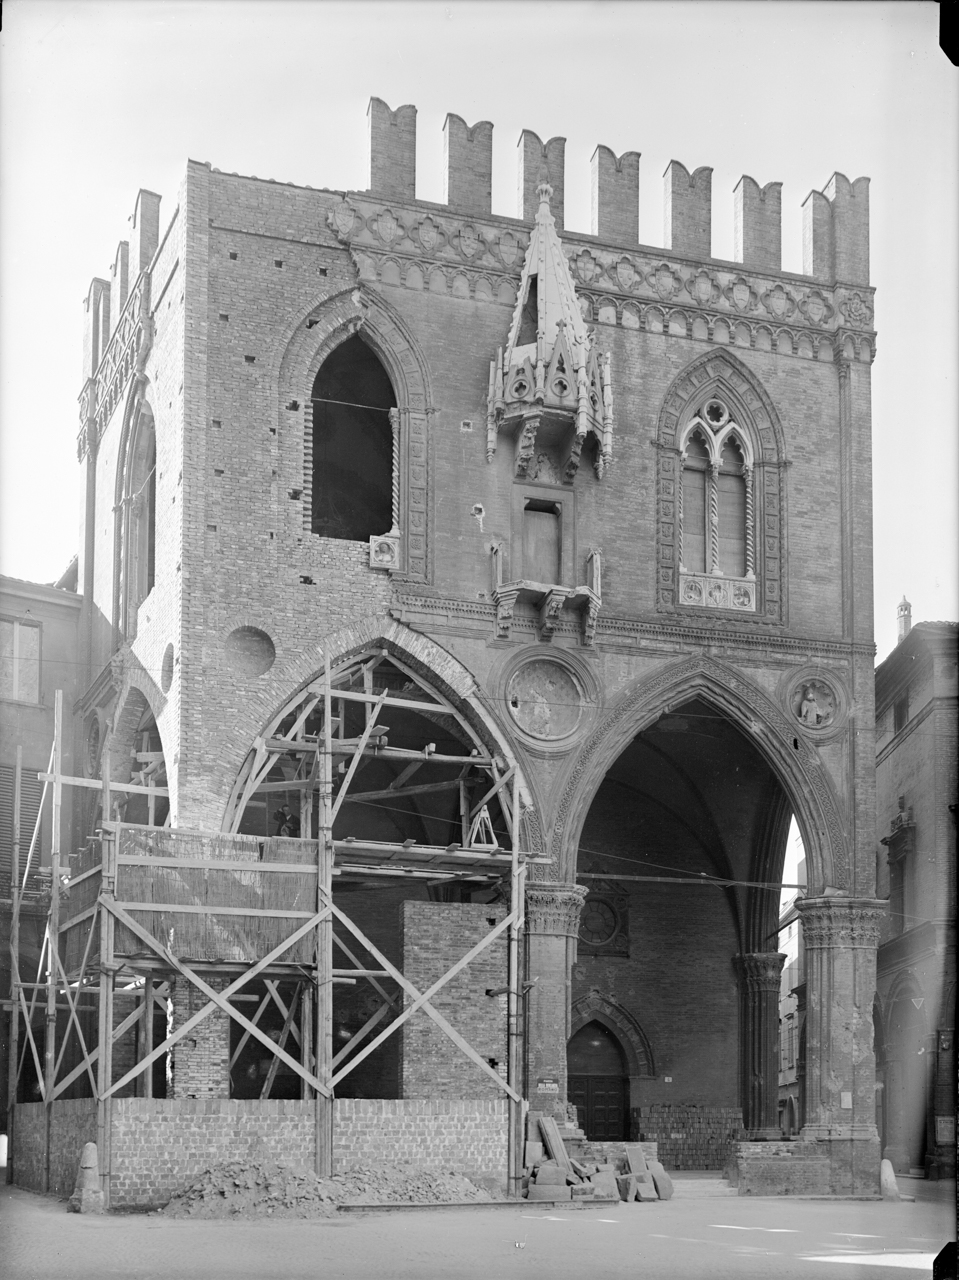 Architetti - Italia - Secc. 14.-15. - Antonio di Vincenzo (negativo) di A. Villani & Figli (XX)